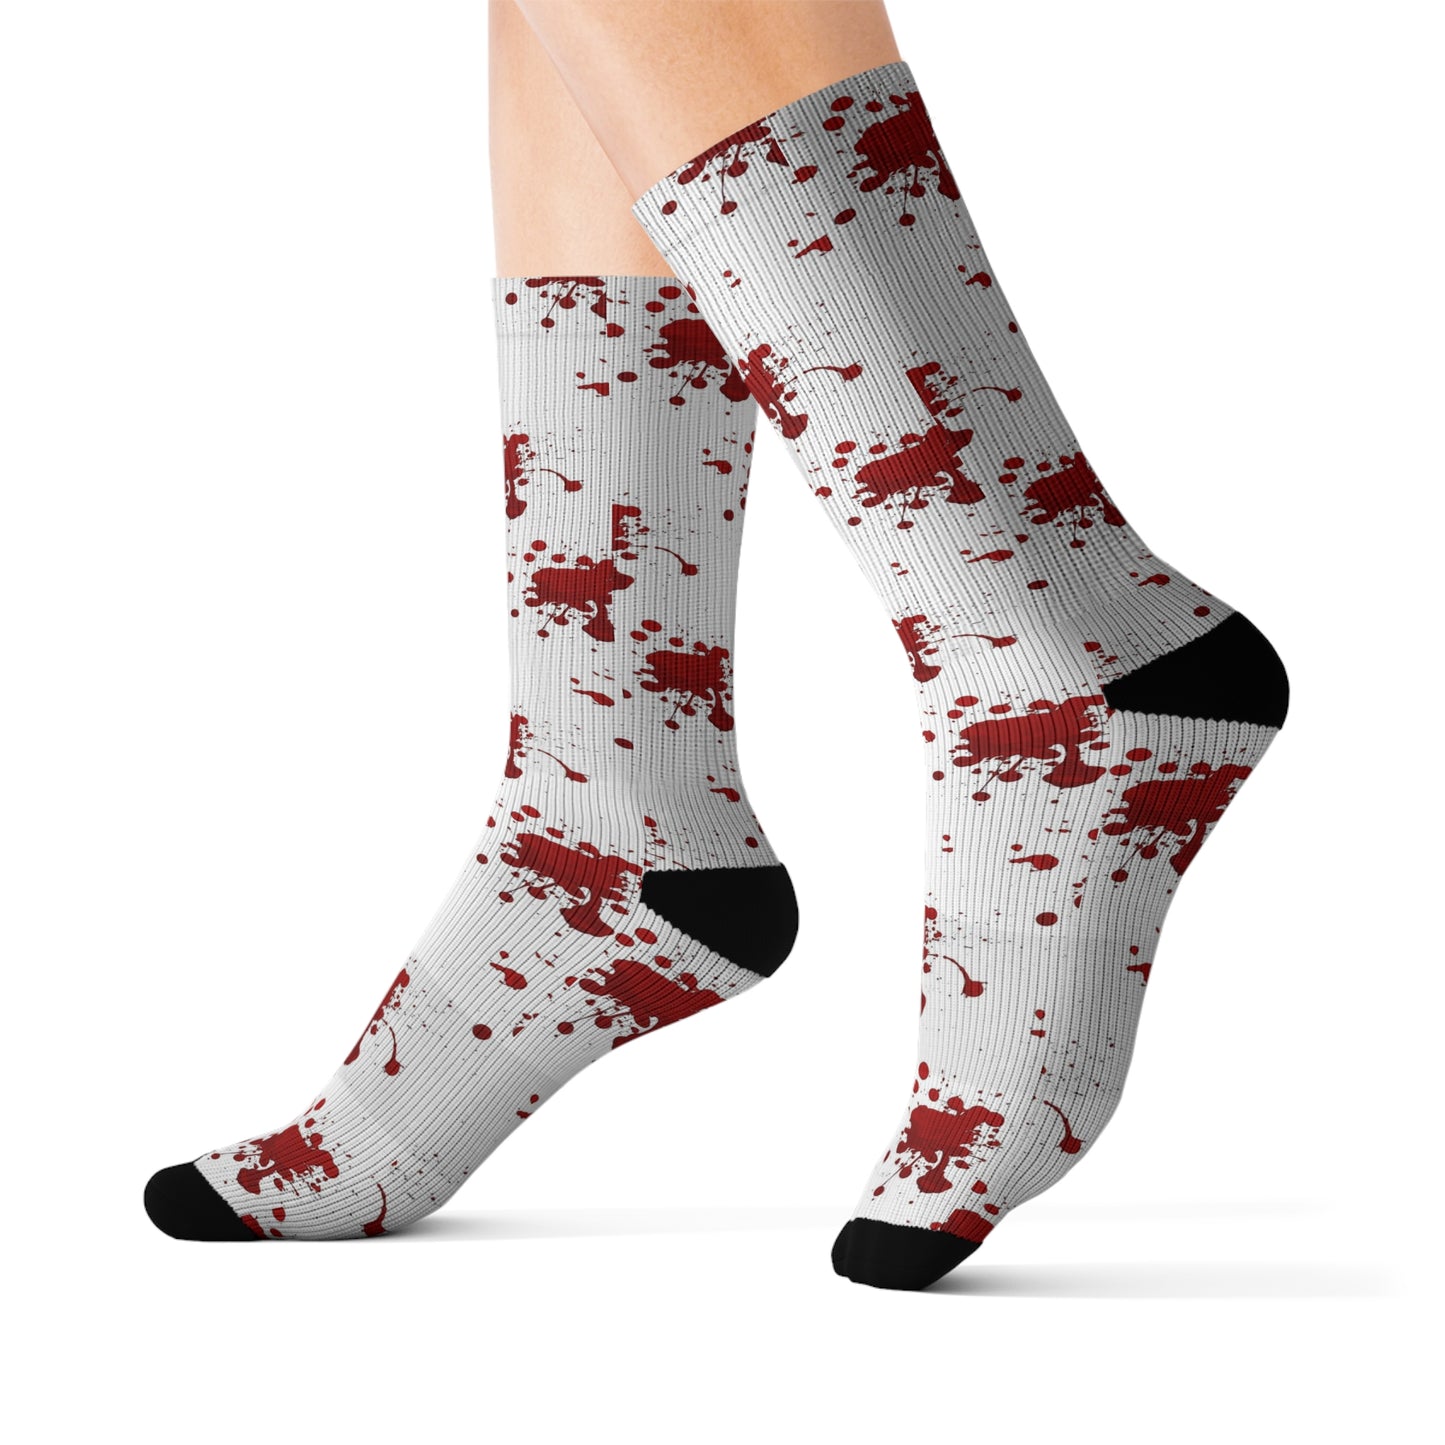 Socks - Blood Spatter Pattern